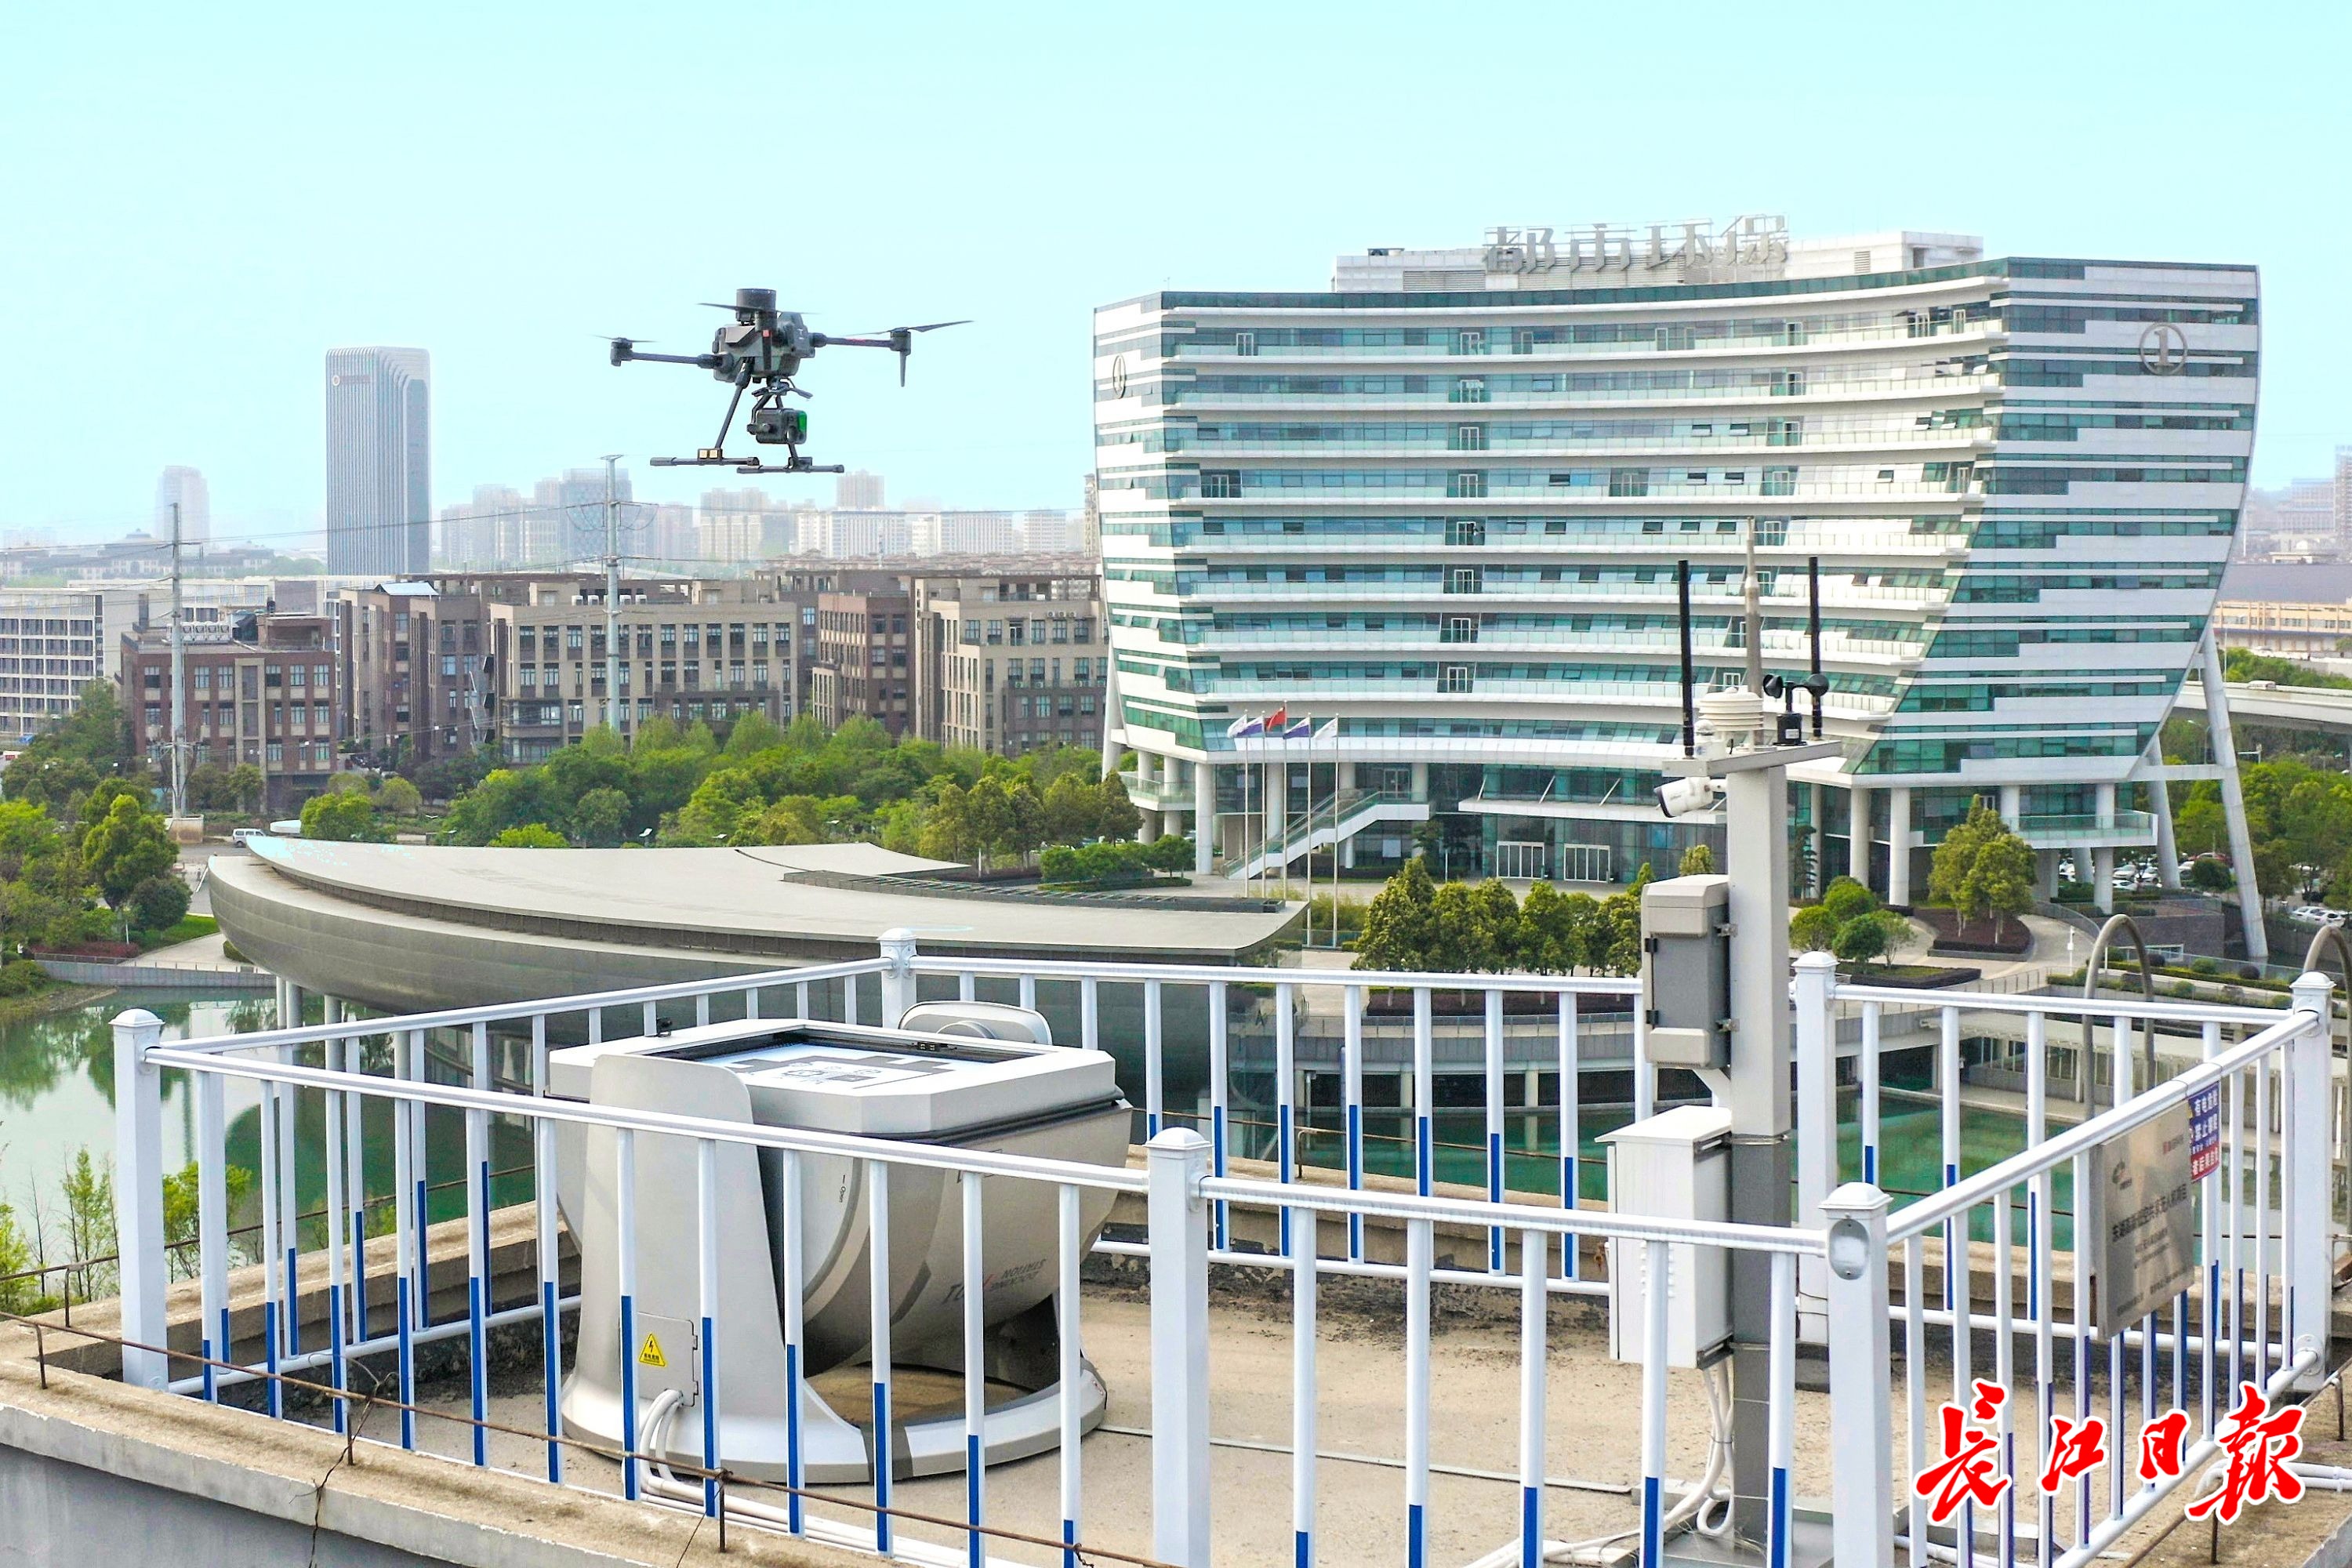 高空巡逻、踏勘线路，无人机深度参与提升城市智慧管理